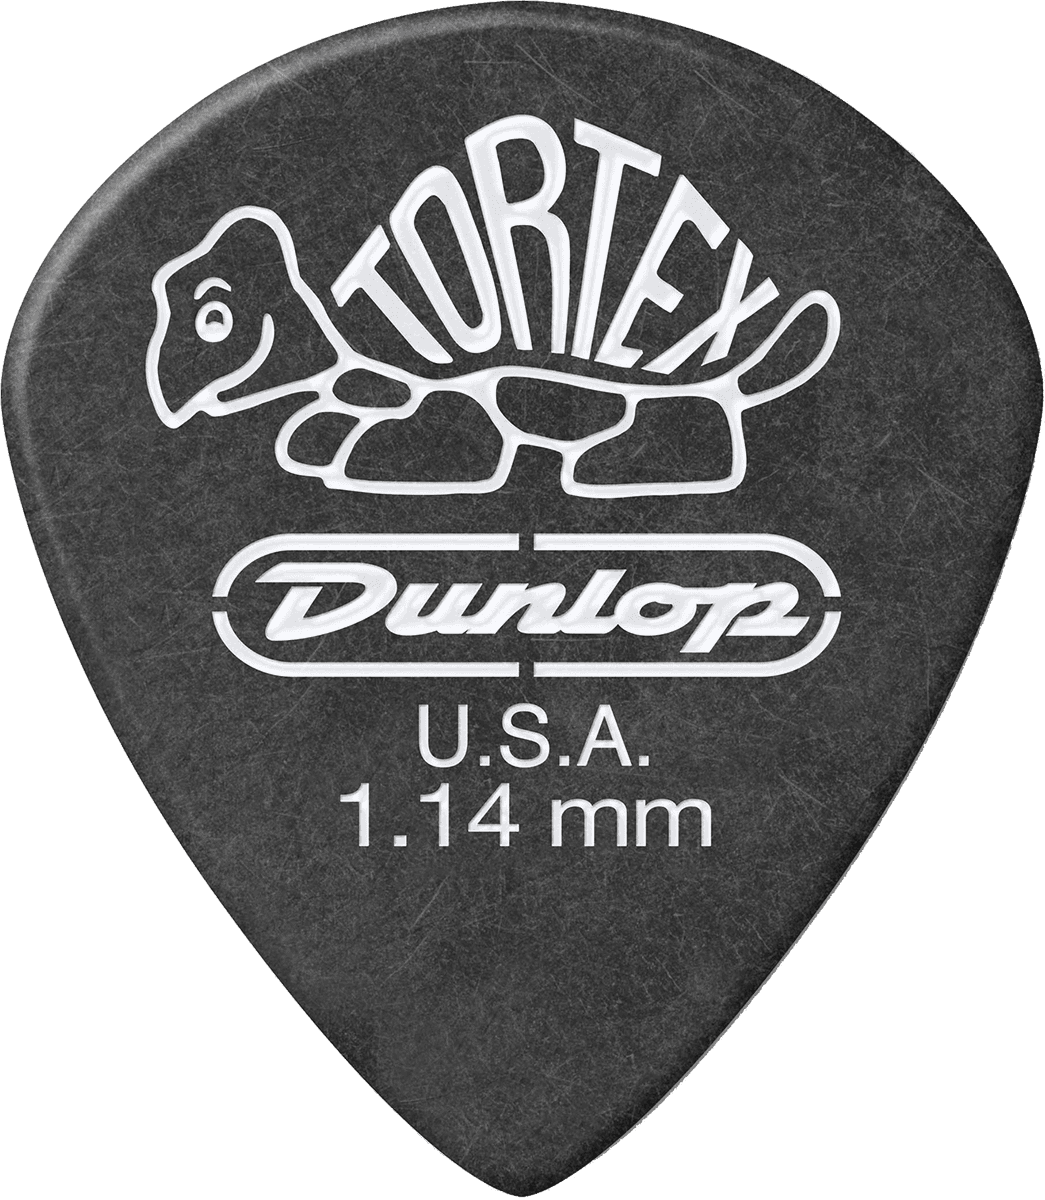 Dunlop 482-P-114 Tortex Plektren 12 Stück | 1,14 mm